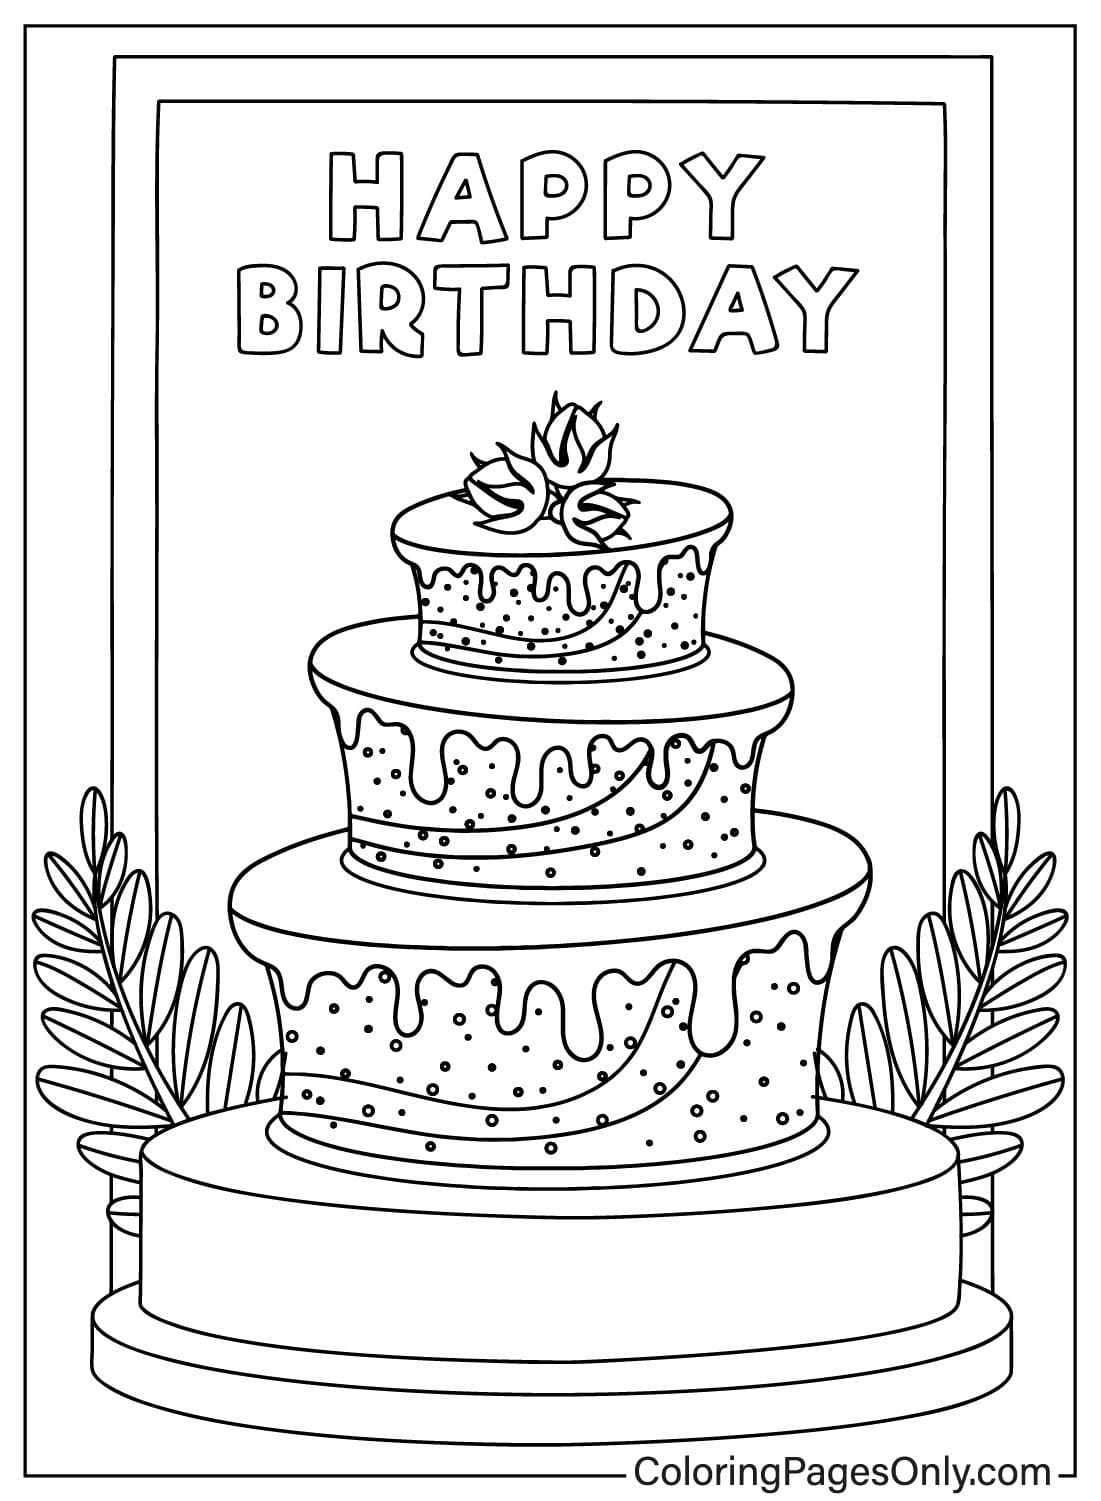 Image de gâteau d'anniversaire à colorier à partir d'un gâteau d'anniversaire